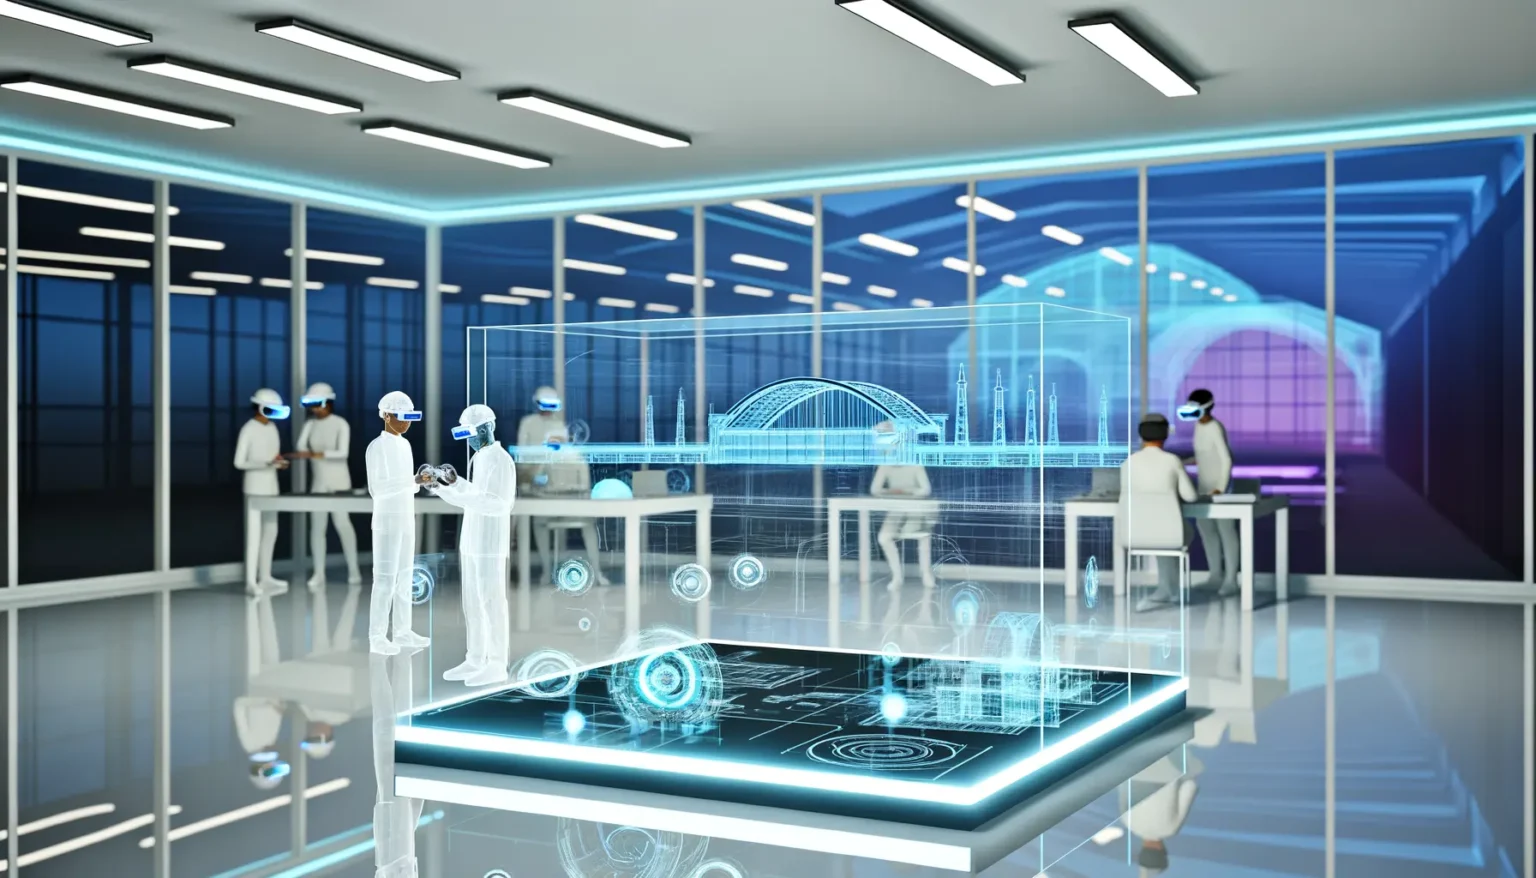 Mehrere Personen in futuristischen weißen Anzügen mit VR-Brillen interagieren mit holographischen Displays von Stadtstrukturen und Fahrzeugen in einem High-Tech-Büro. Ein hervorstechendes Merkmal ist ein holographischer Entwurf einer Brücke in der Mitte des Raumes.